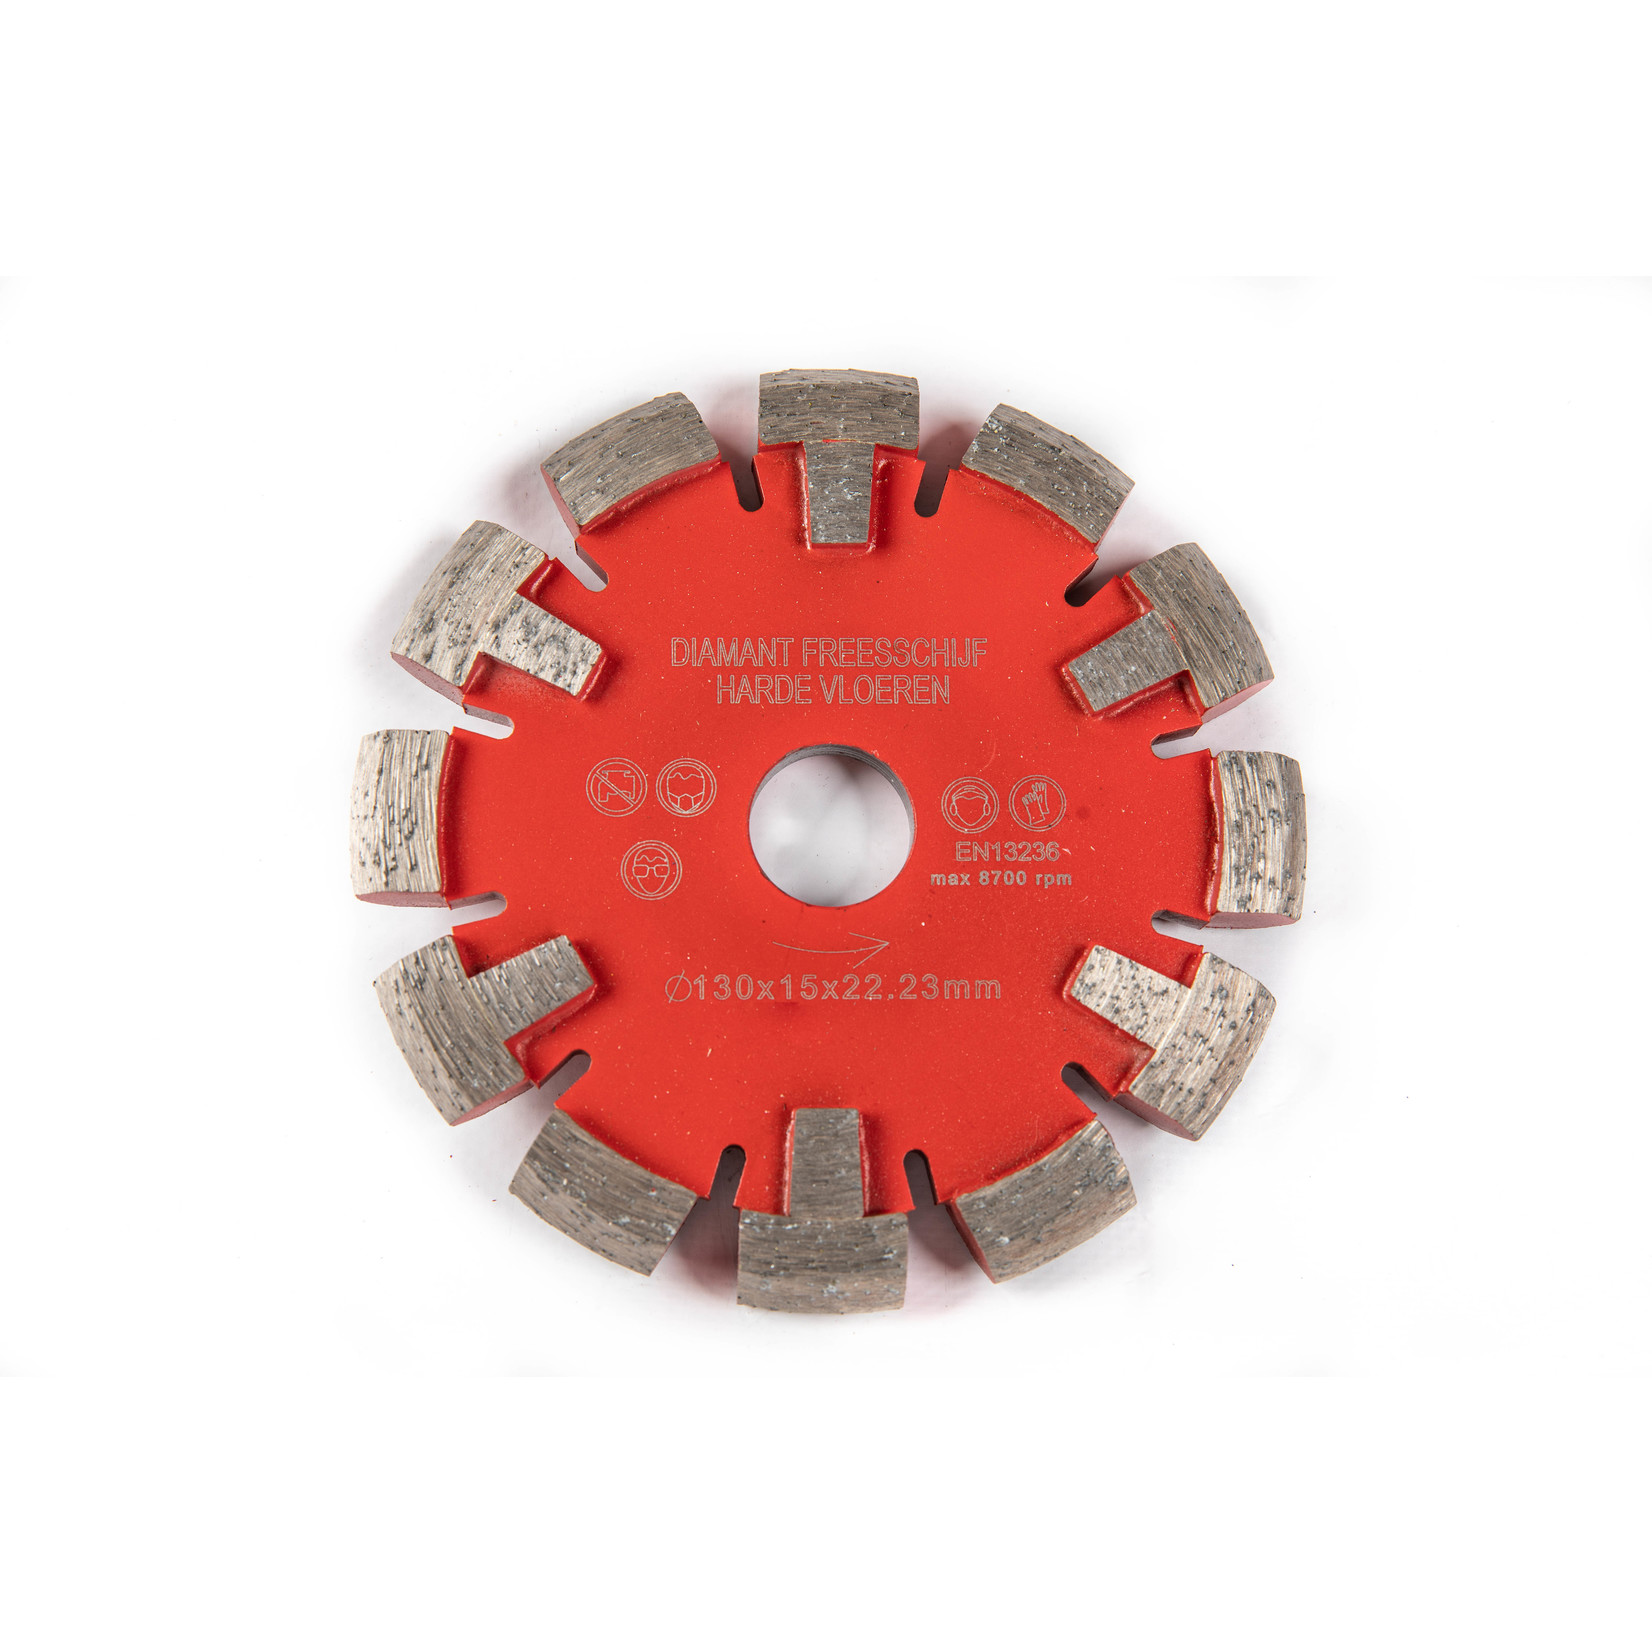 EH-15/130 Vloerfreesschijf zeer harde vloeren V segment 15x130mm rood